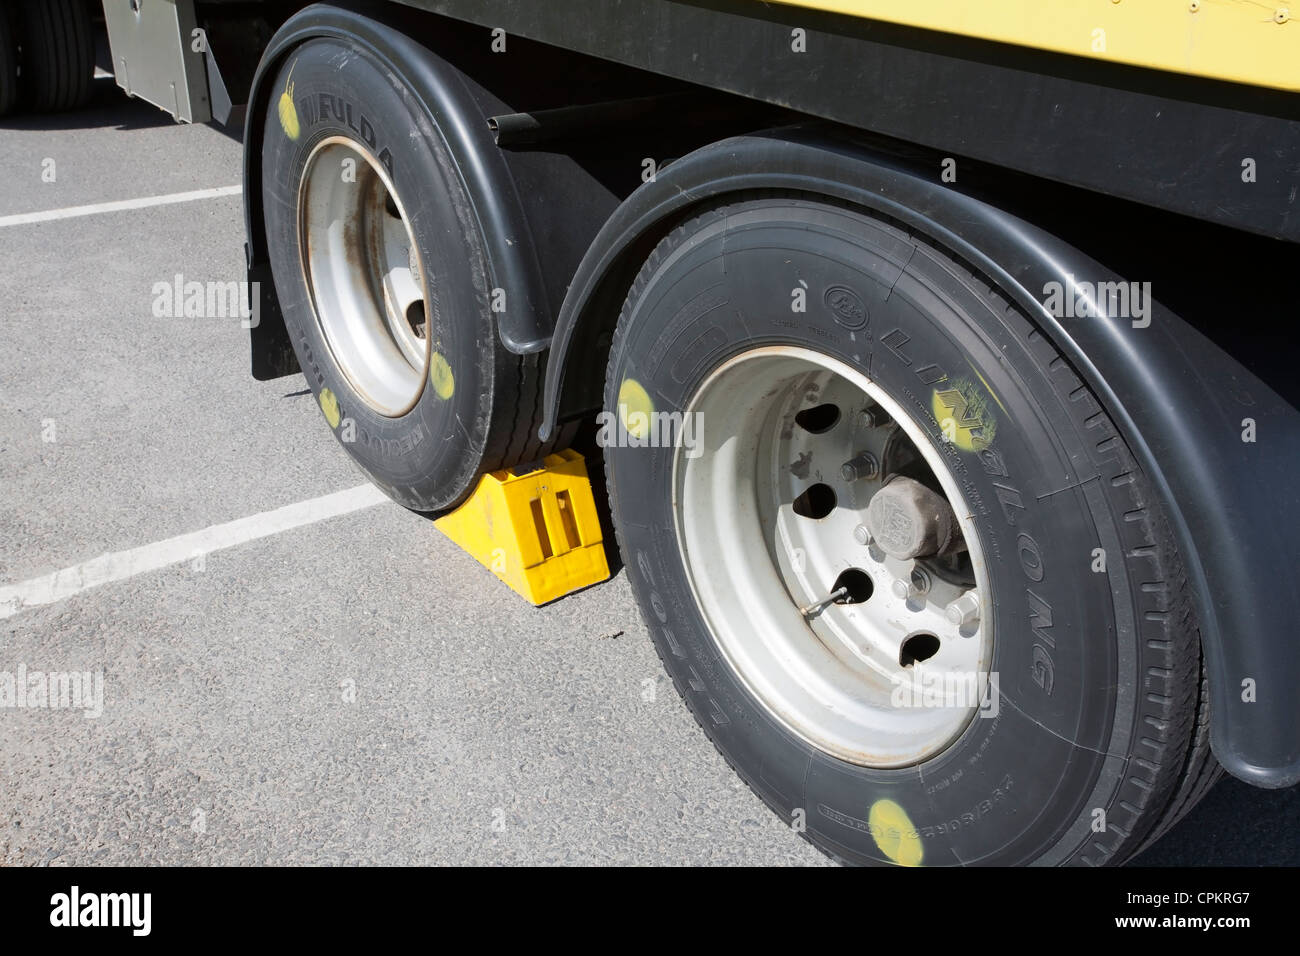 gelben Rad Keil Keil unter LKW-Reifen Stockfotografie - Alamy